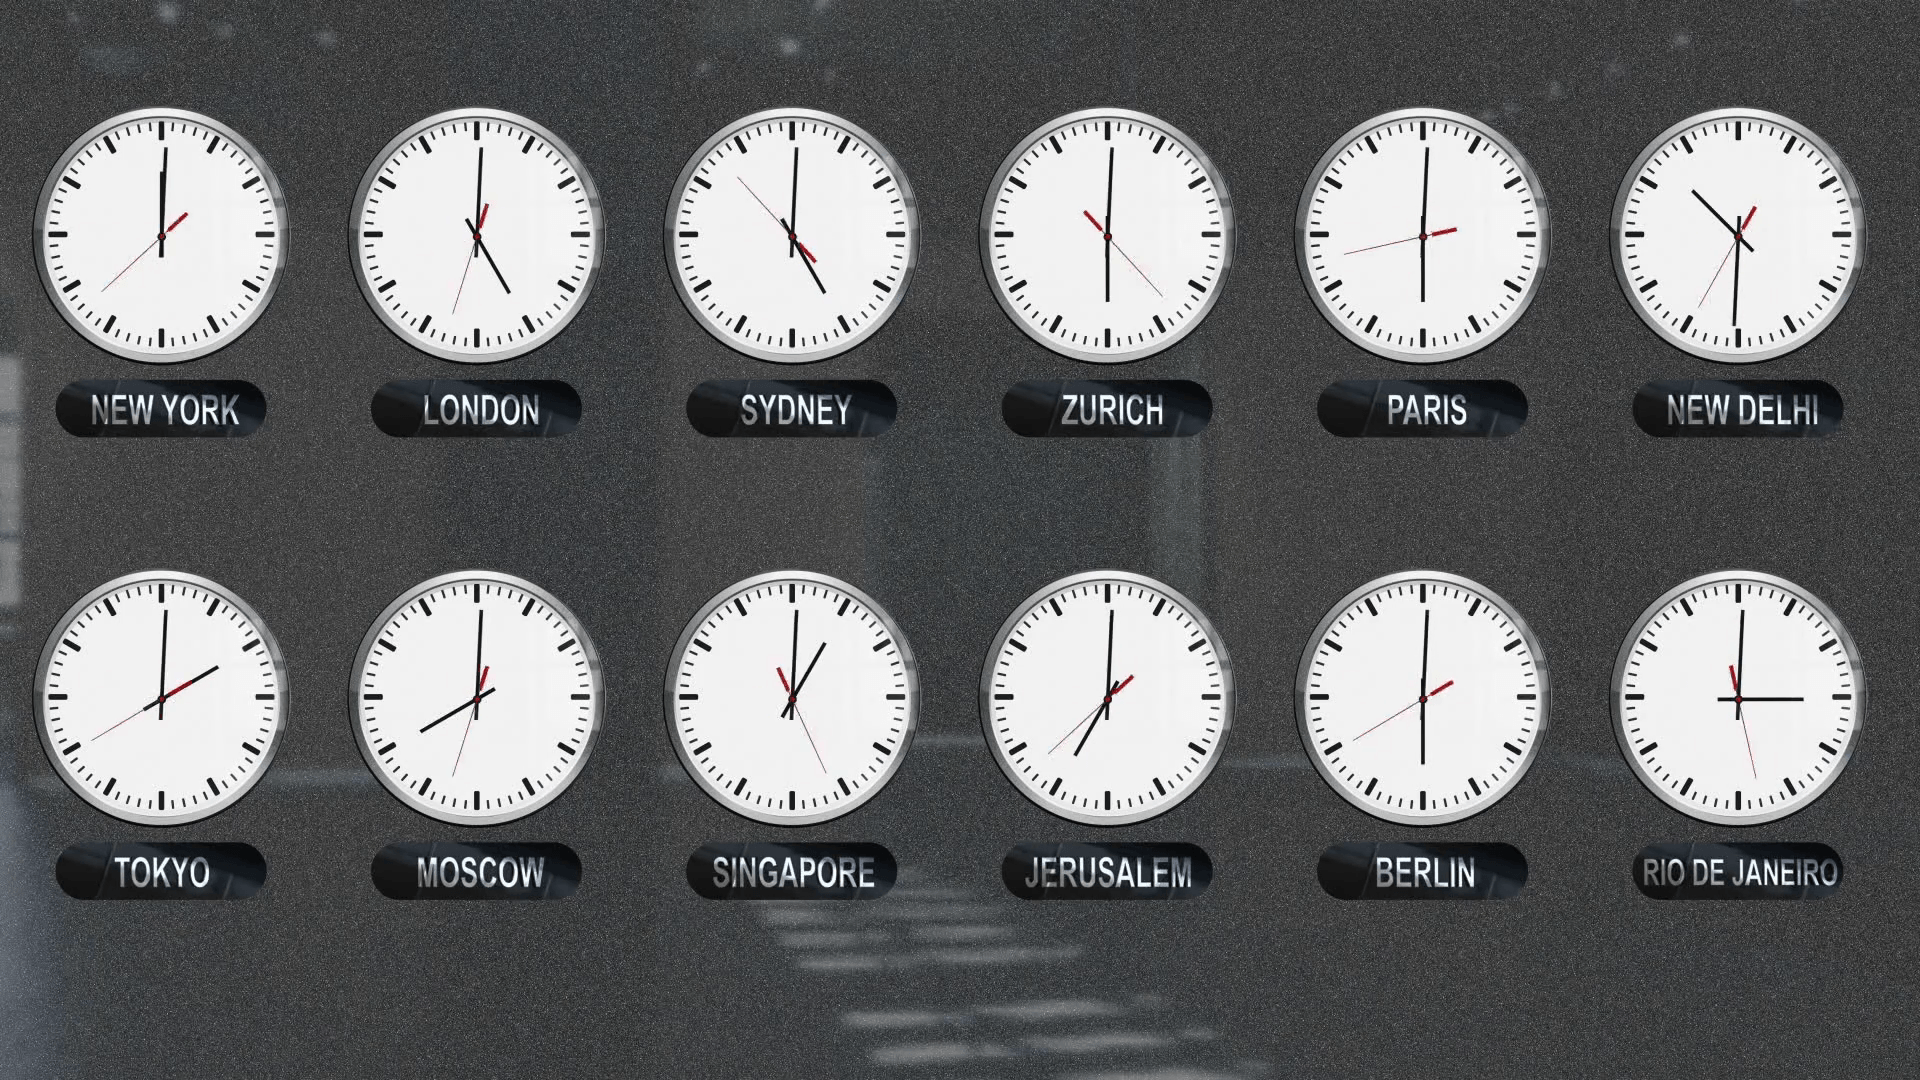 install clock on desktop windows 10